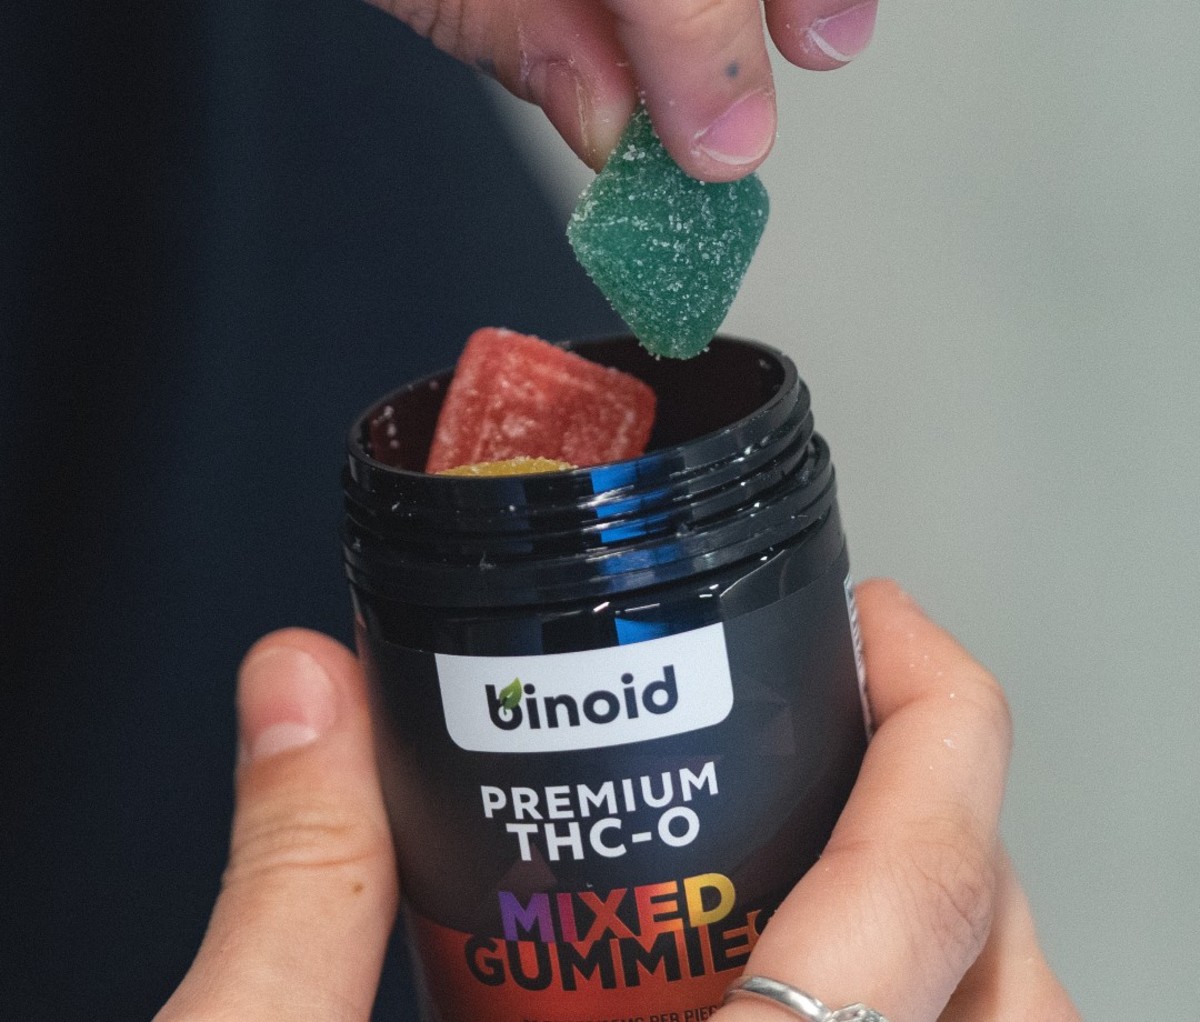 Binoid Delta 9 gummies and THC-O gummies